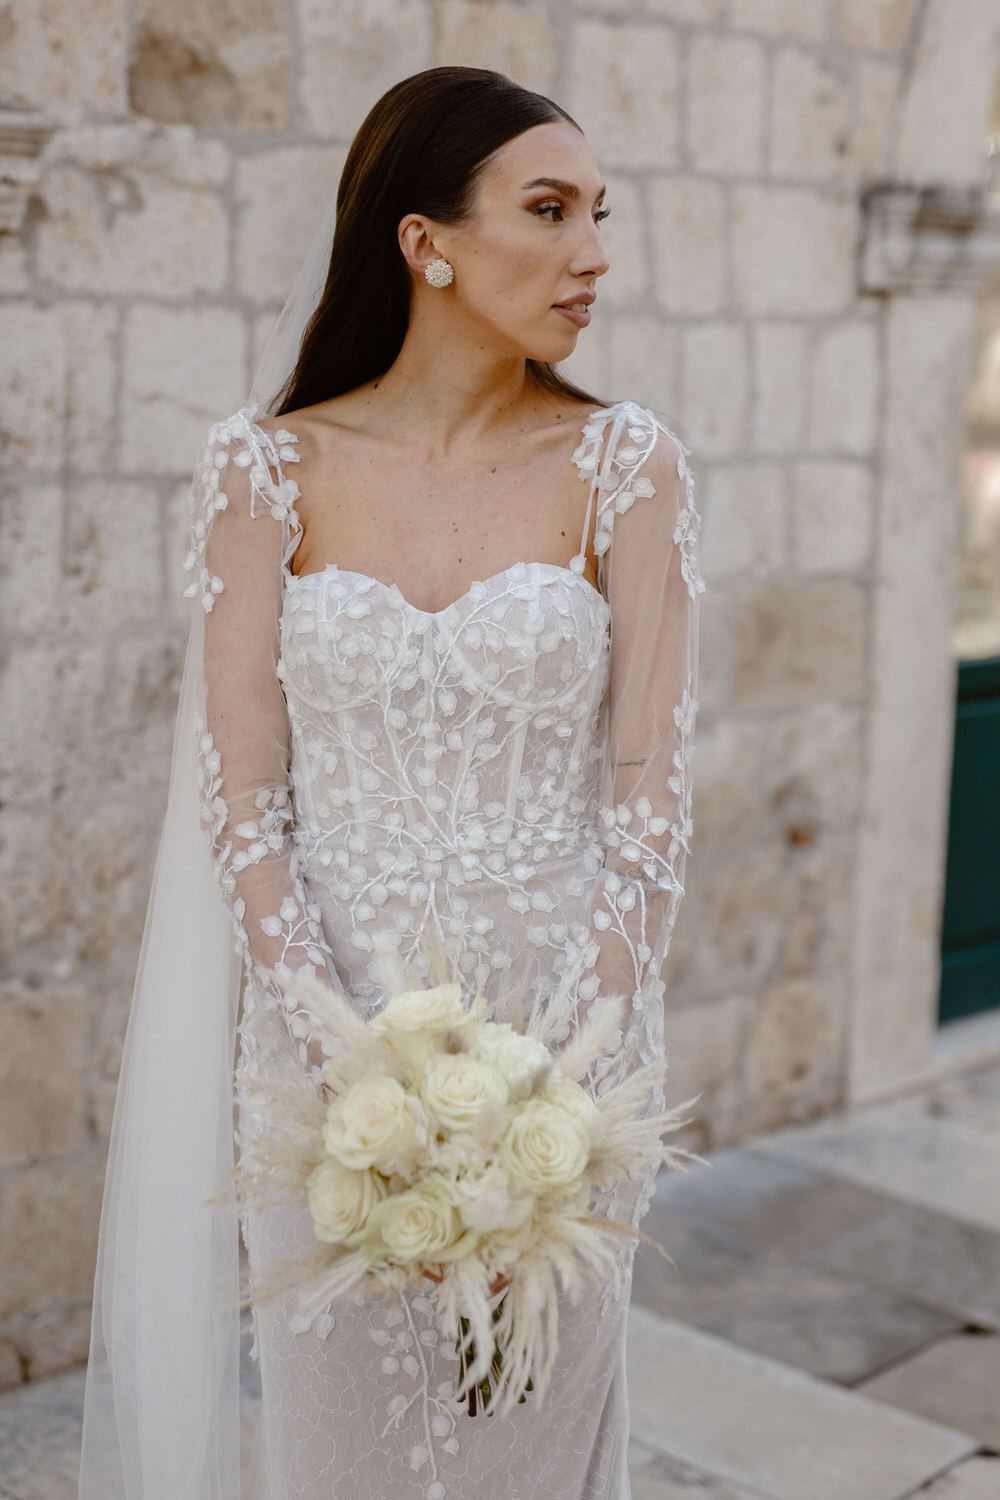 Dubrovnik elopement wedding Emma Lucas 027 | Croatia Elopement Photographer and Videographer